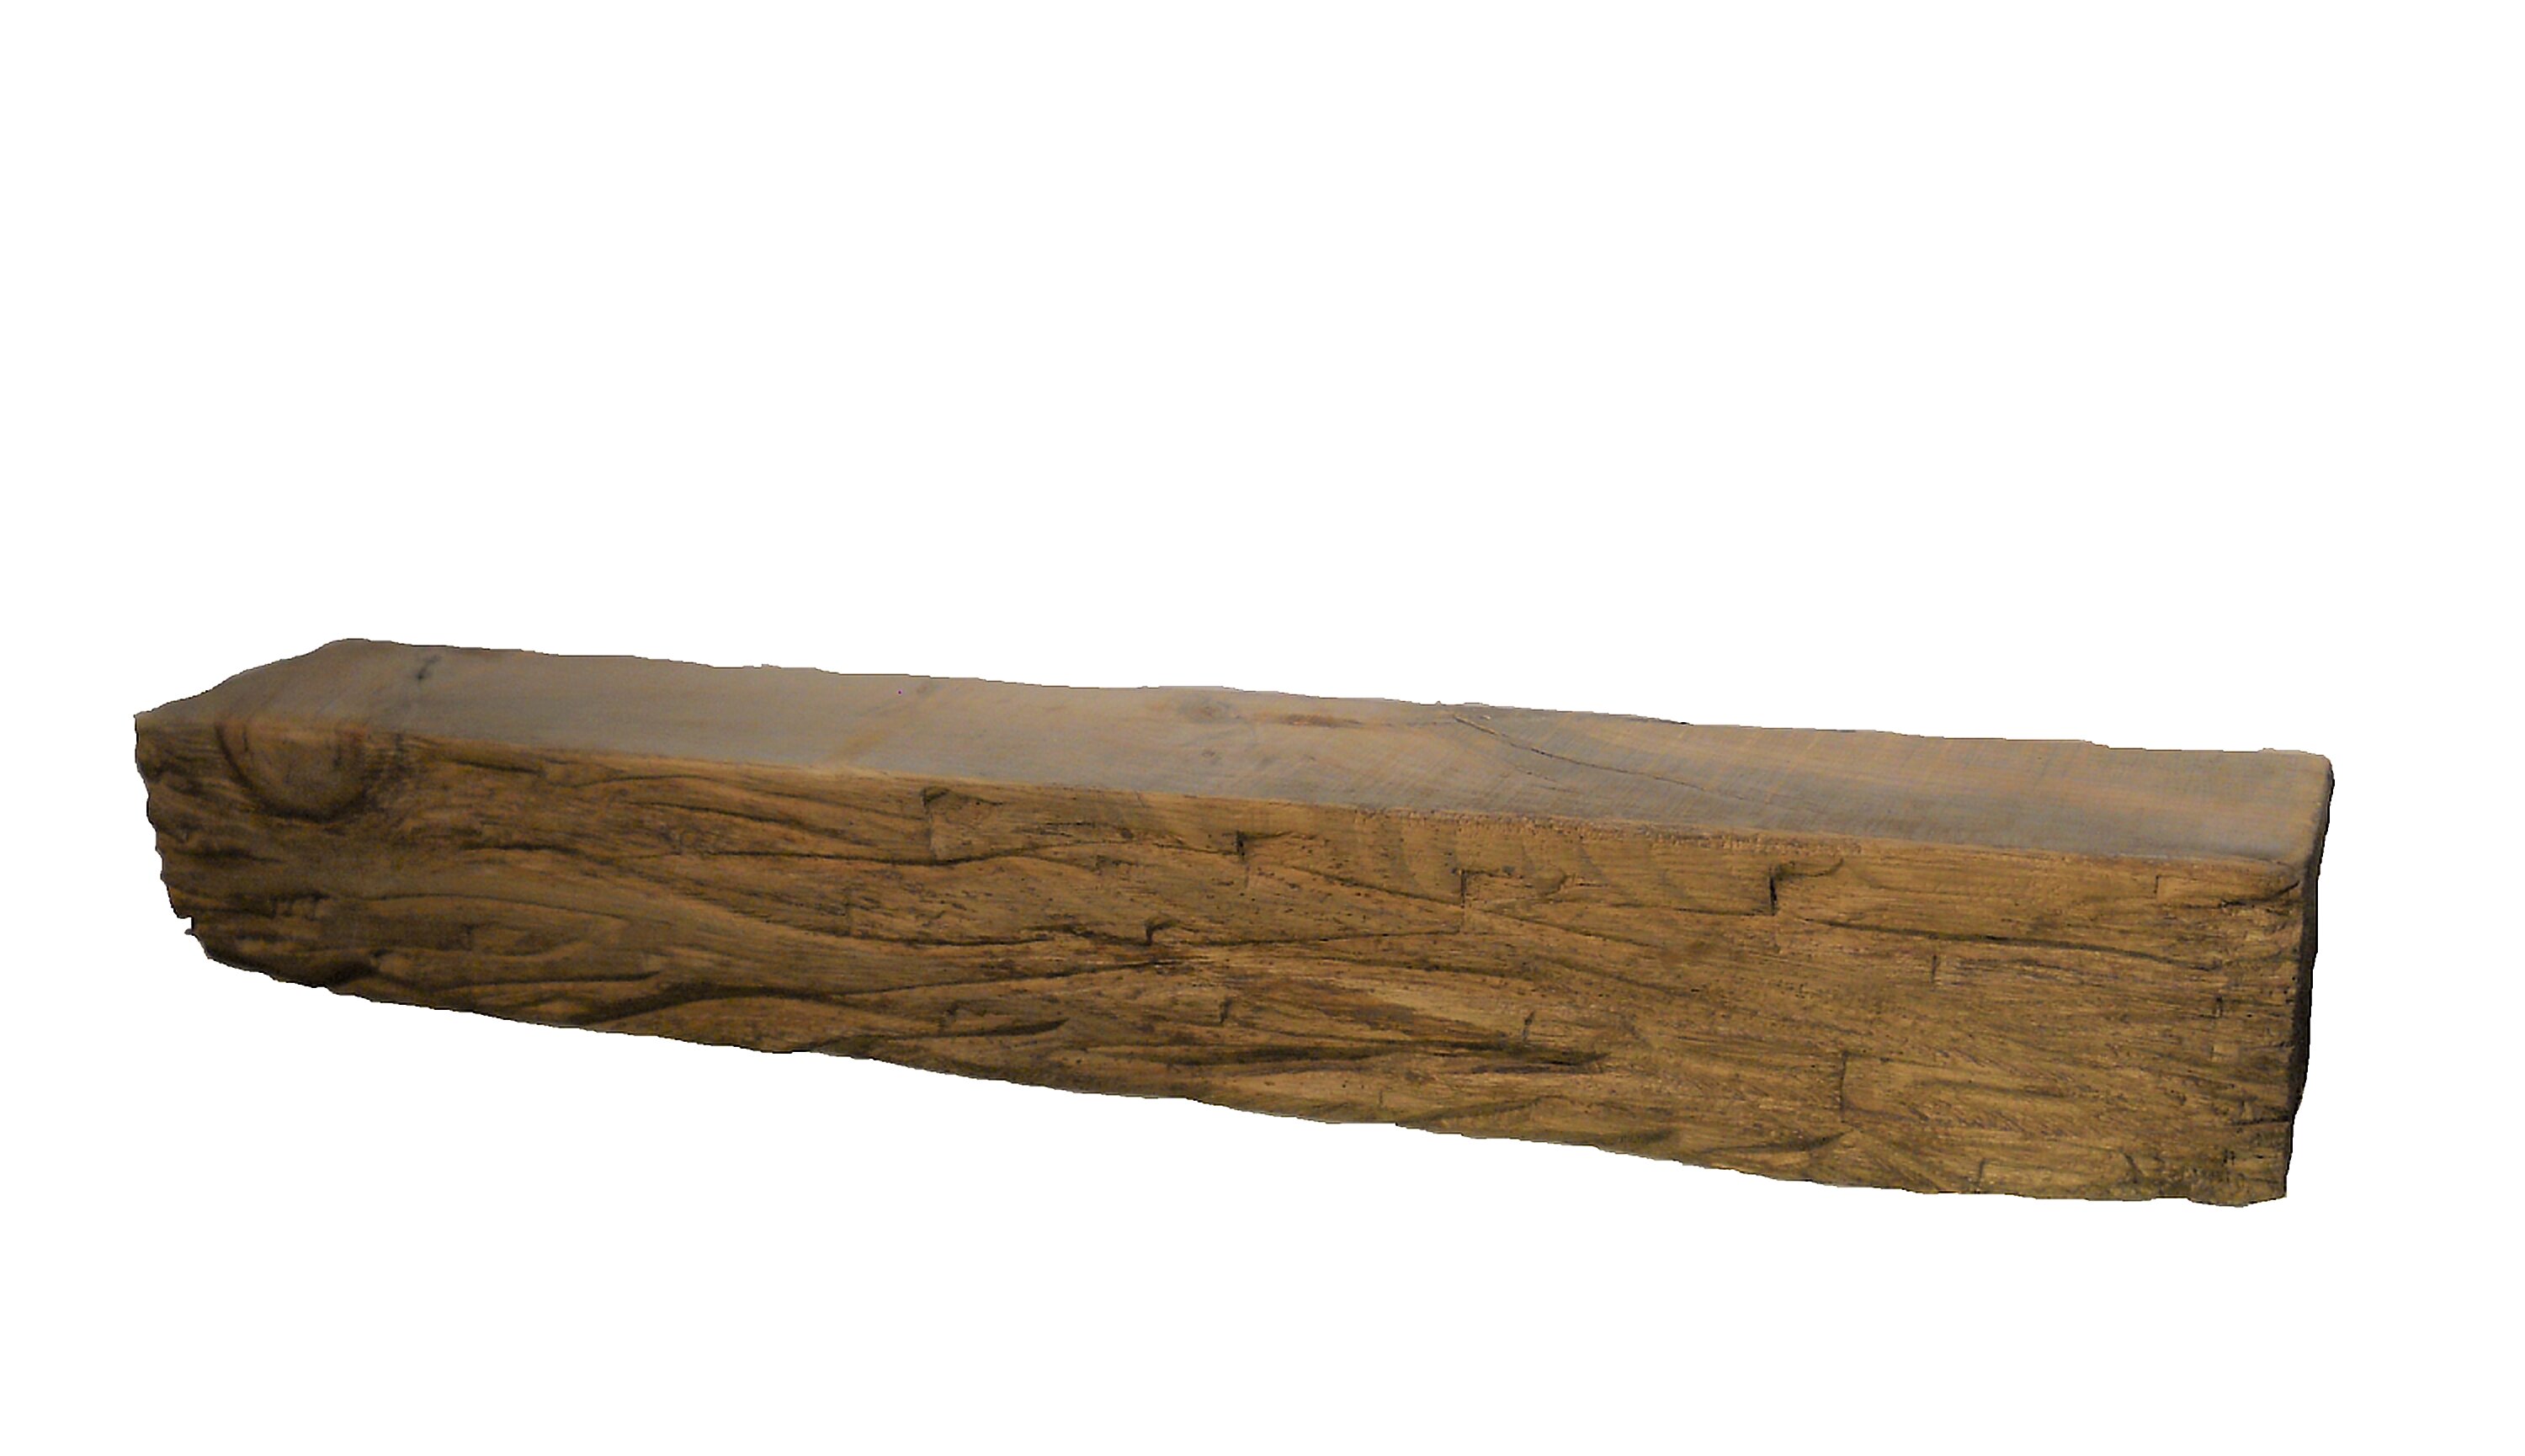 Loon Peak® Fairlie Hand Carved Solid Pine Wood Mantel & Reviews